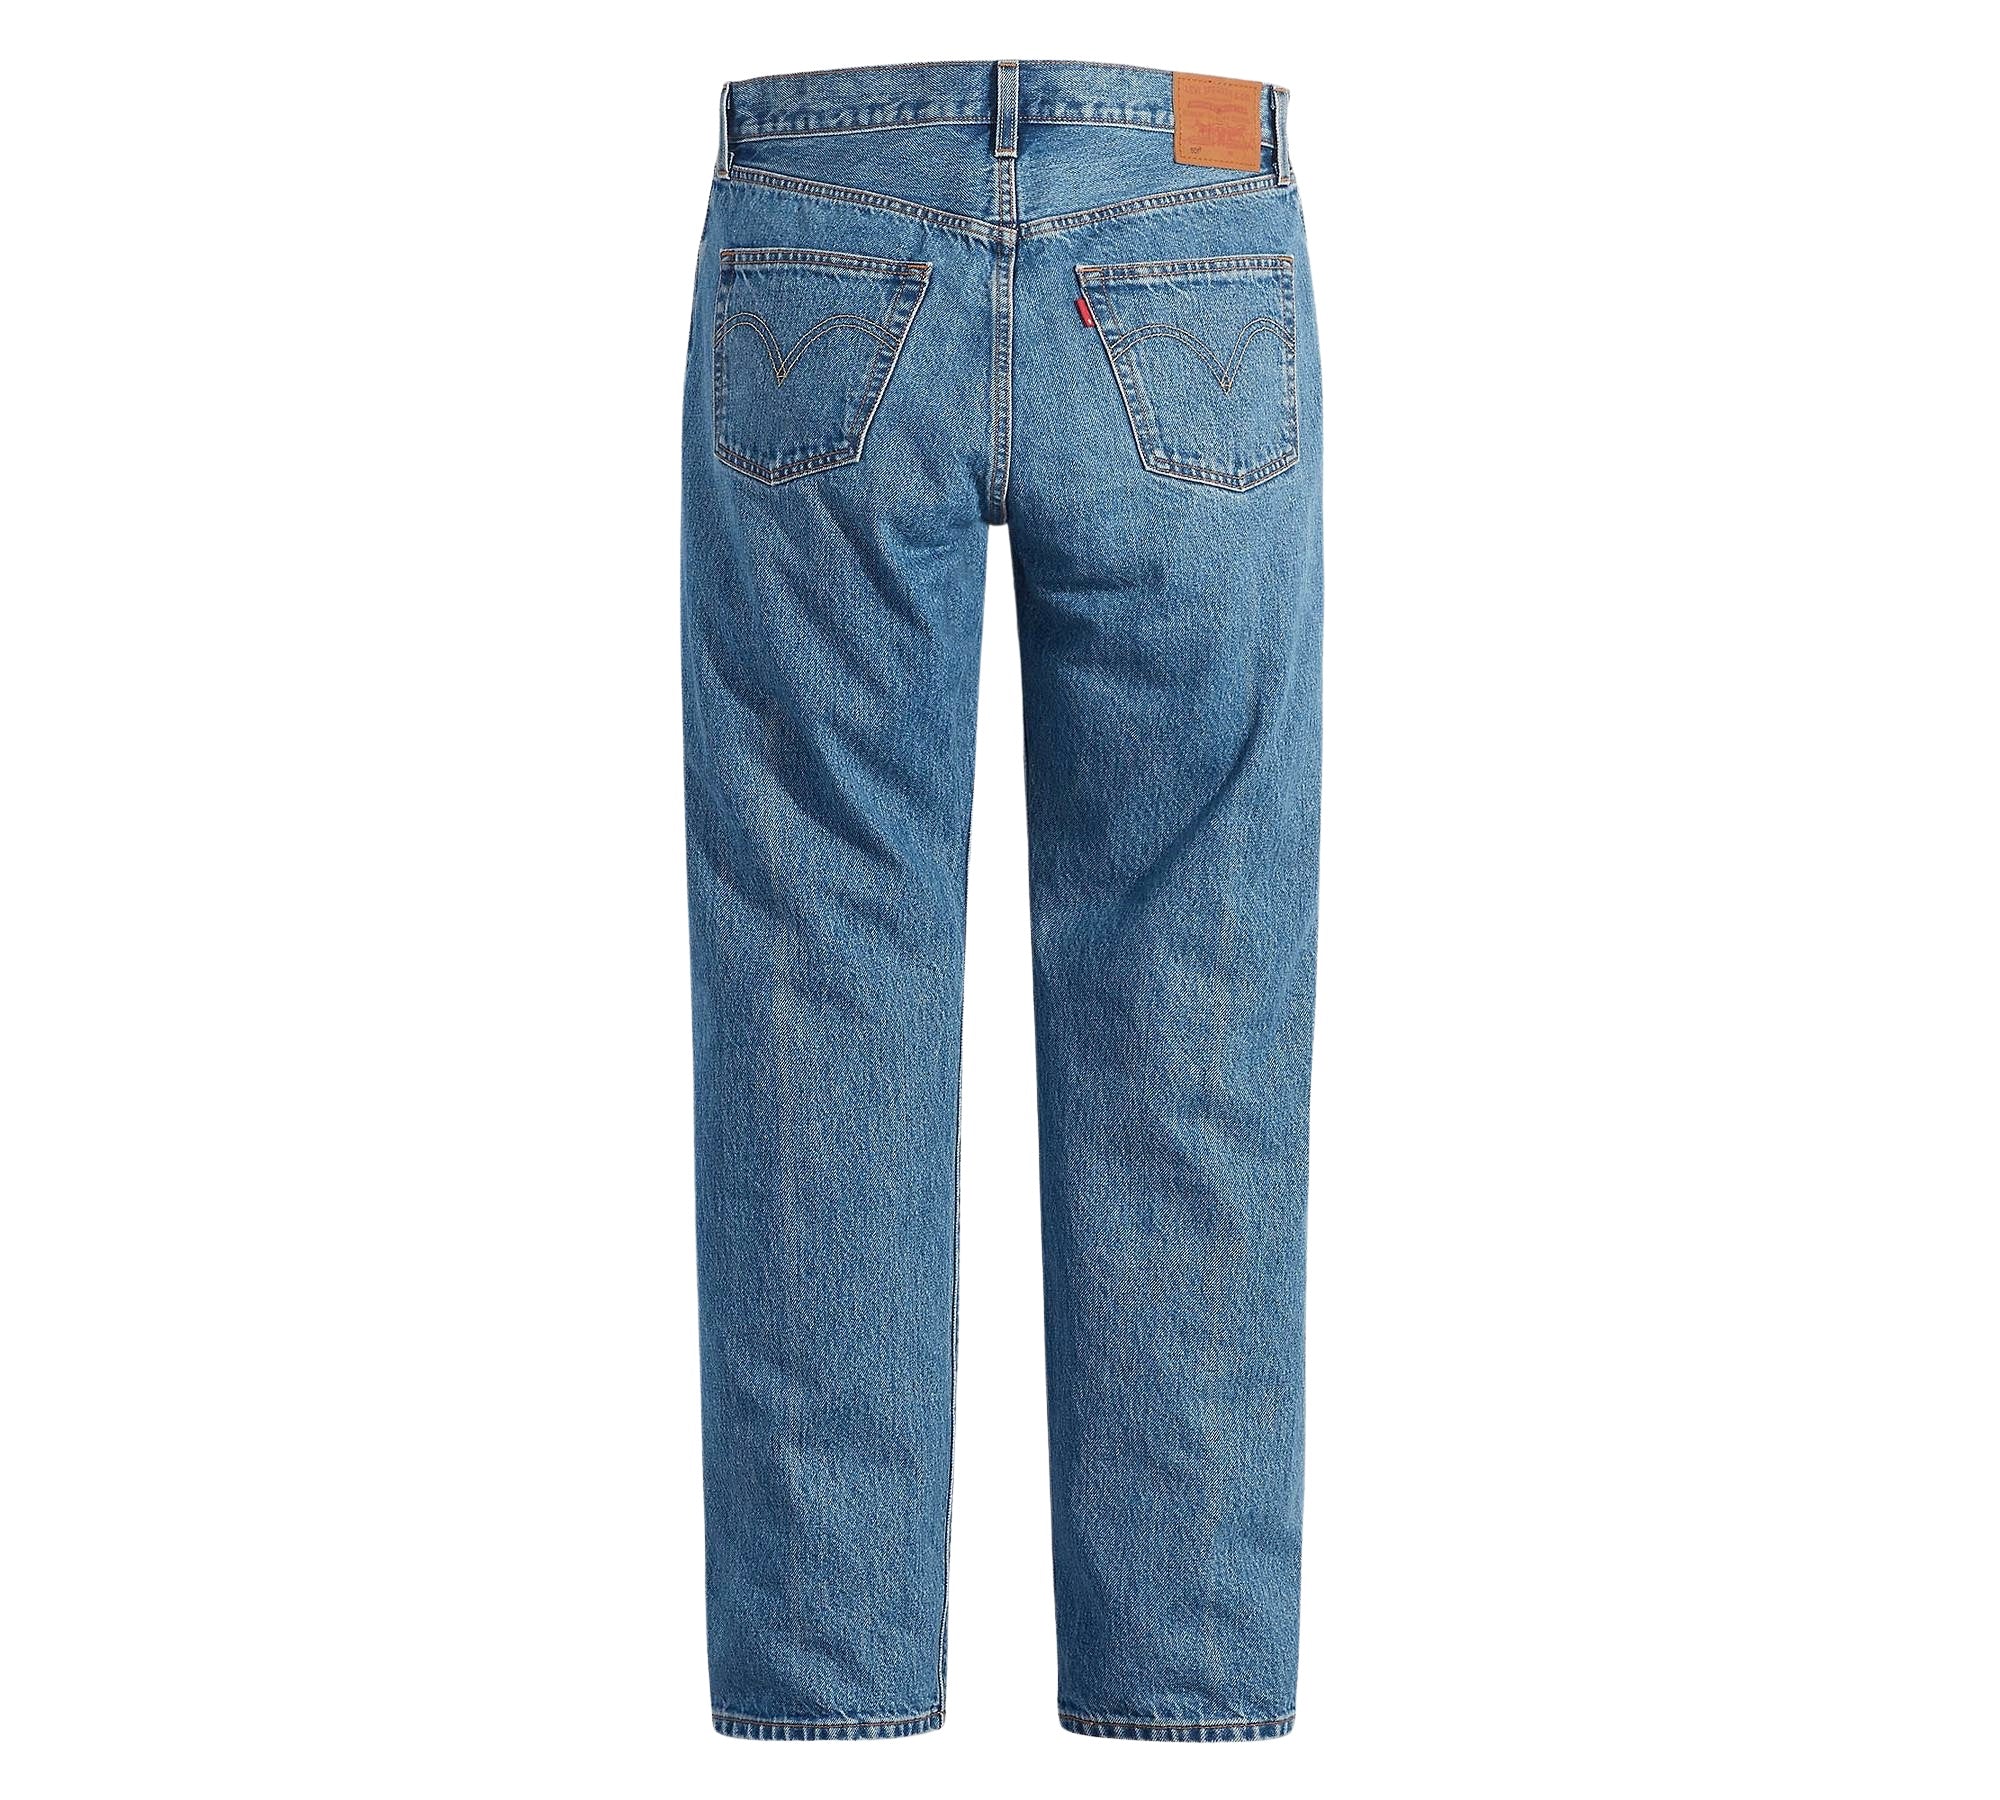 Vintage Levi's Classic Blue Jeans - Waist 32 - Length 34 - Vintage Superstore Online